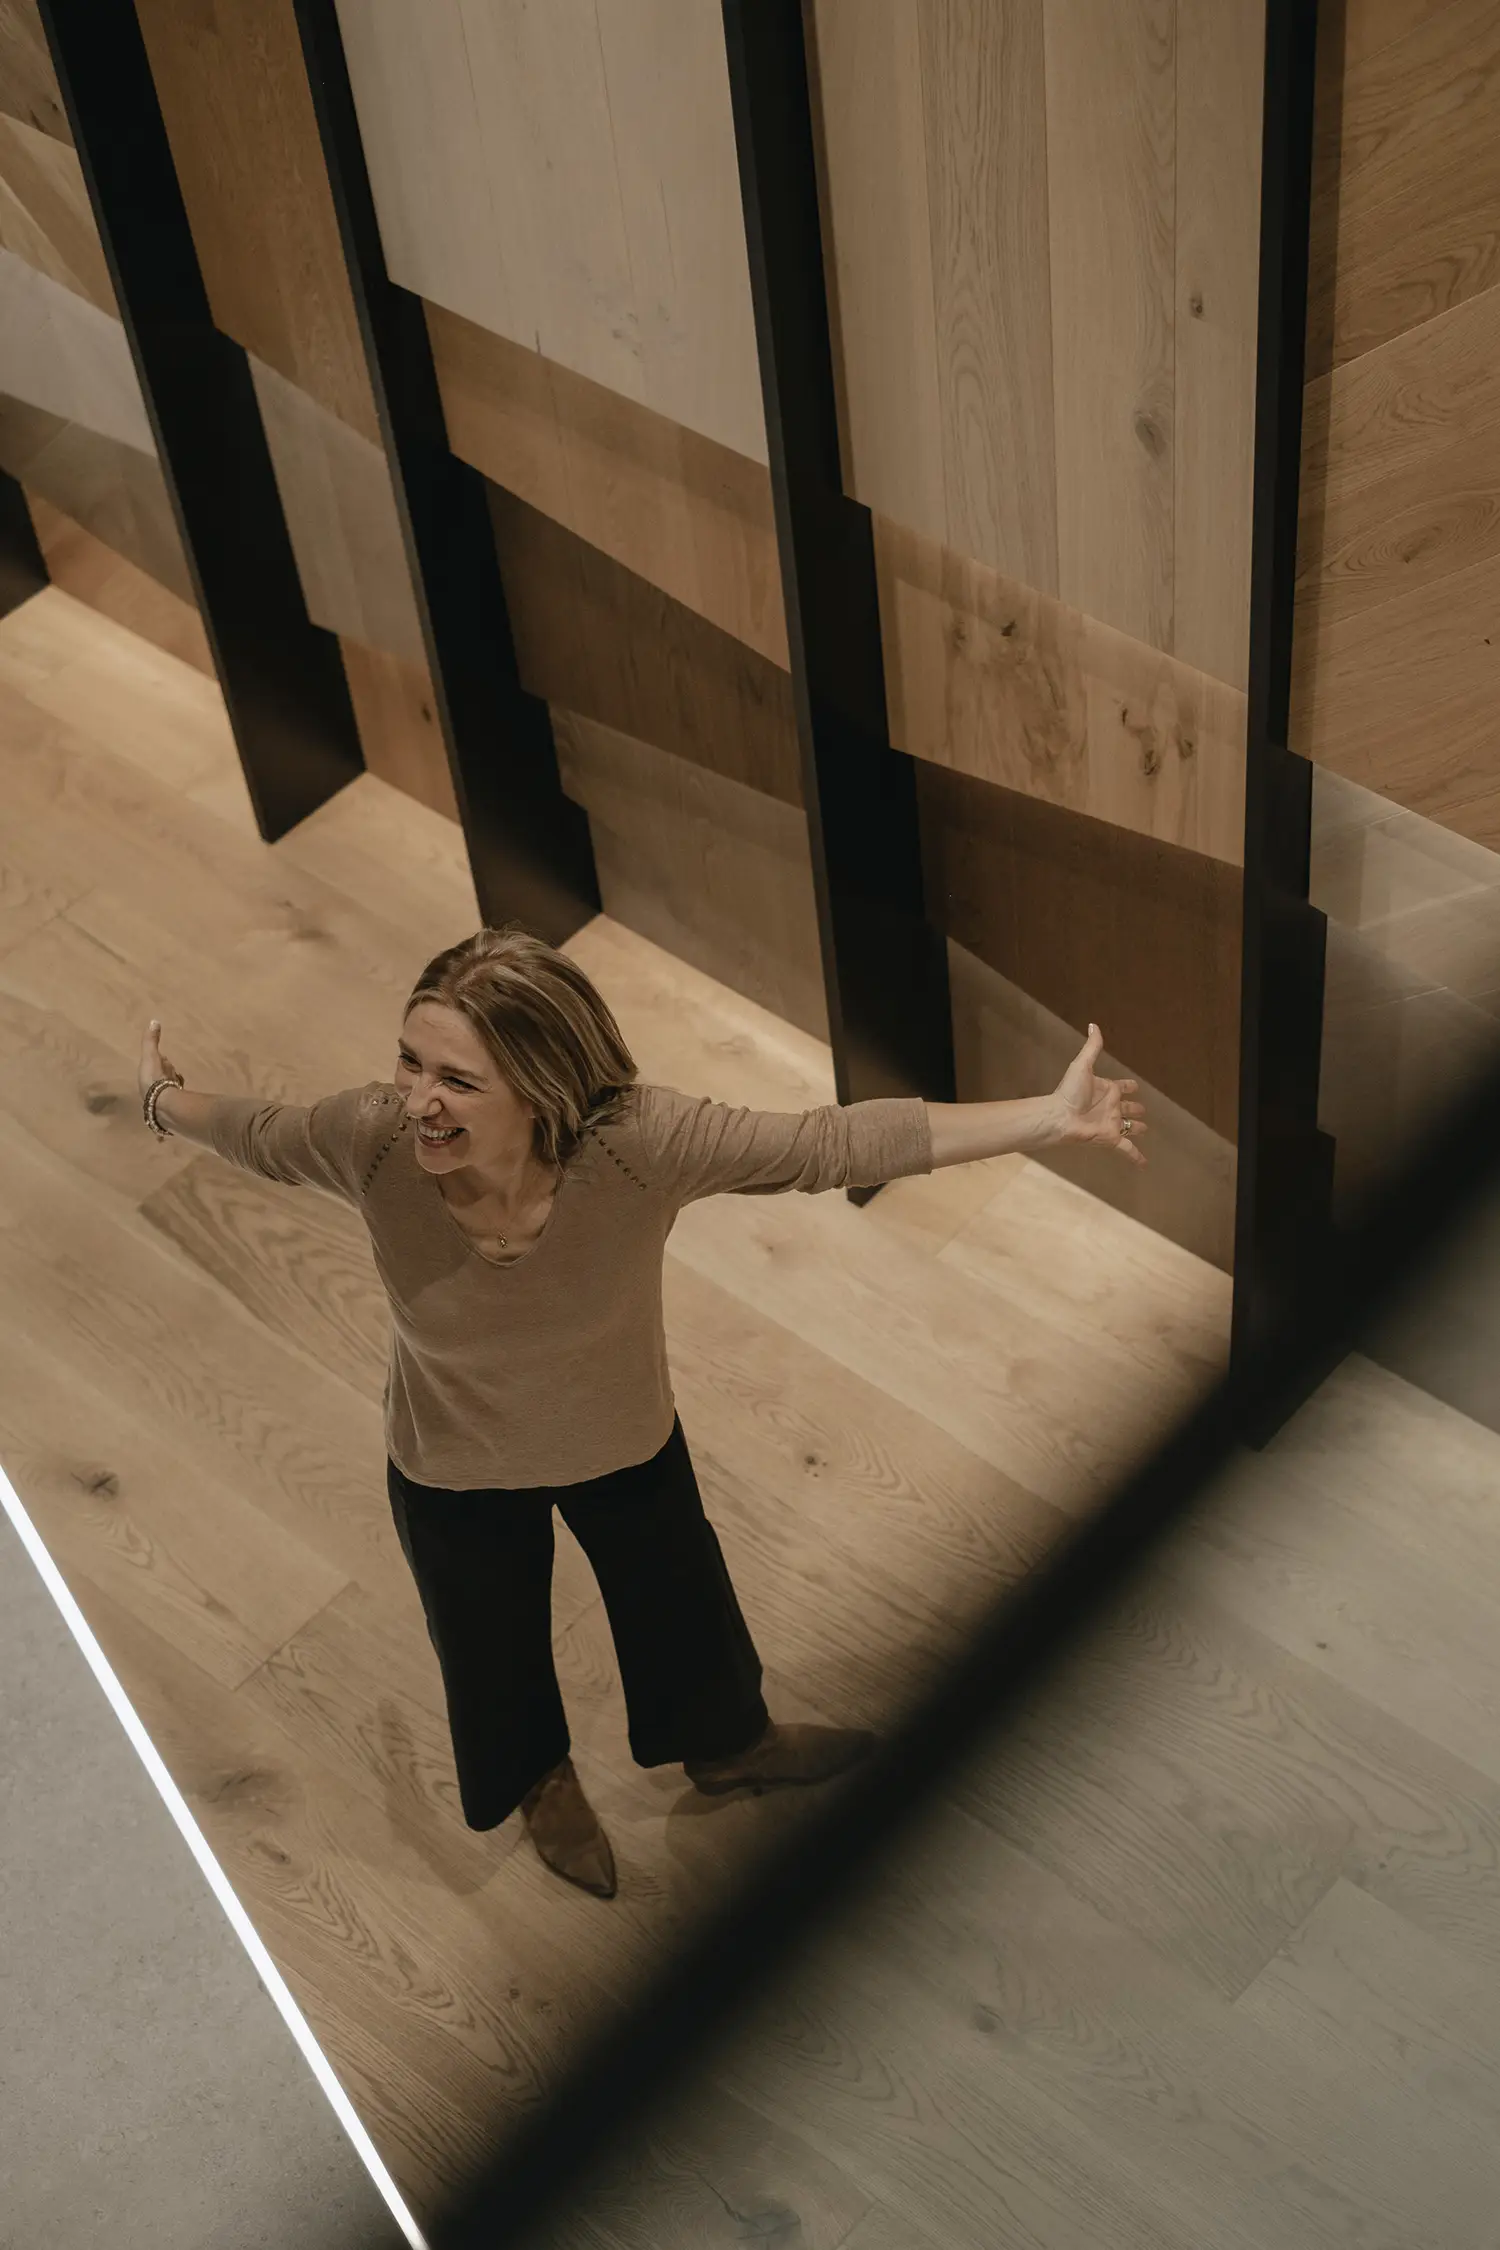 L'architecte d'intérieur Stefania Luraghi est photographiée en train d'écarter les bras devant un élégant panneau de bois.